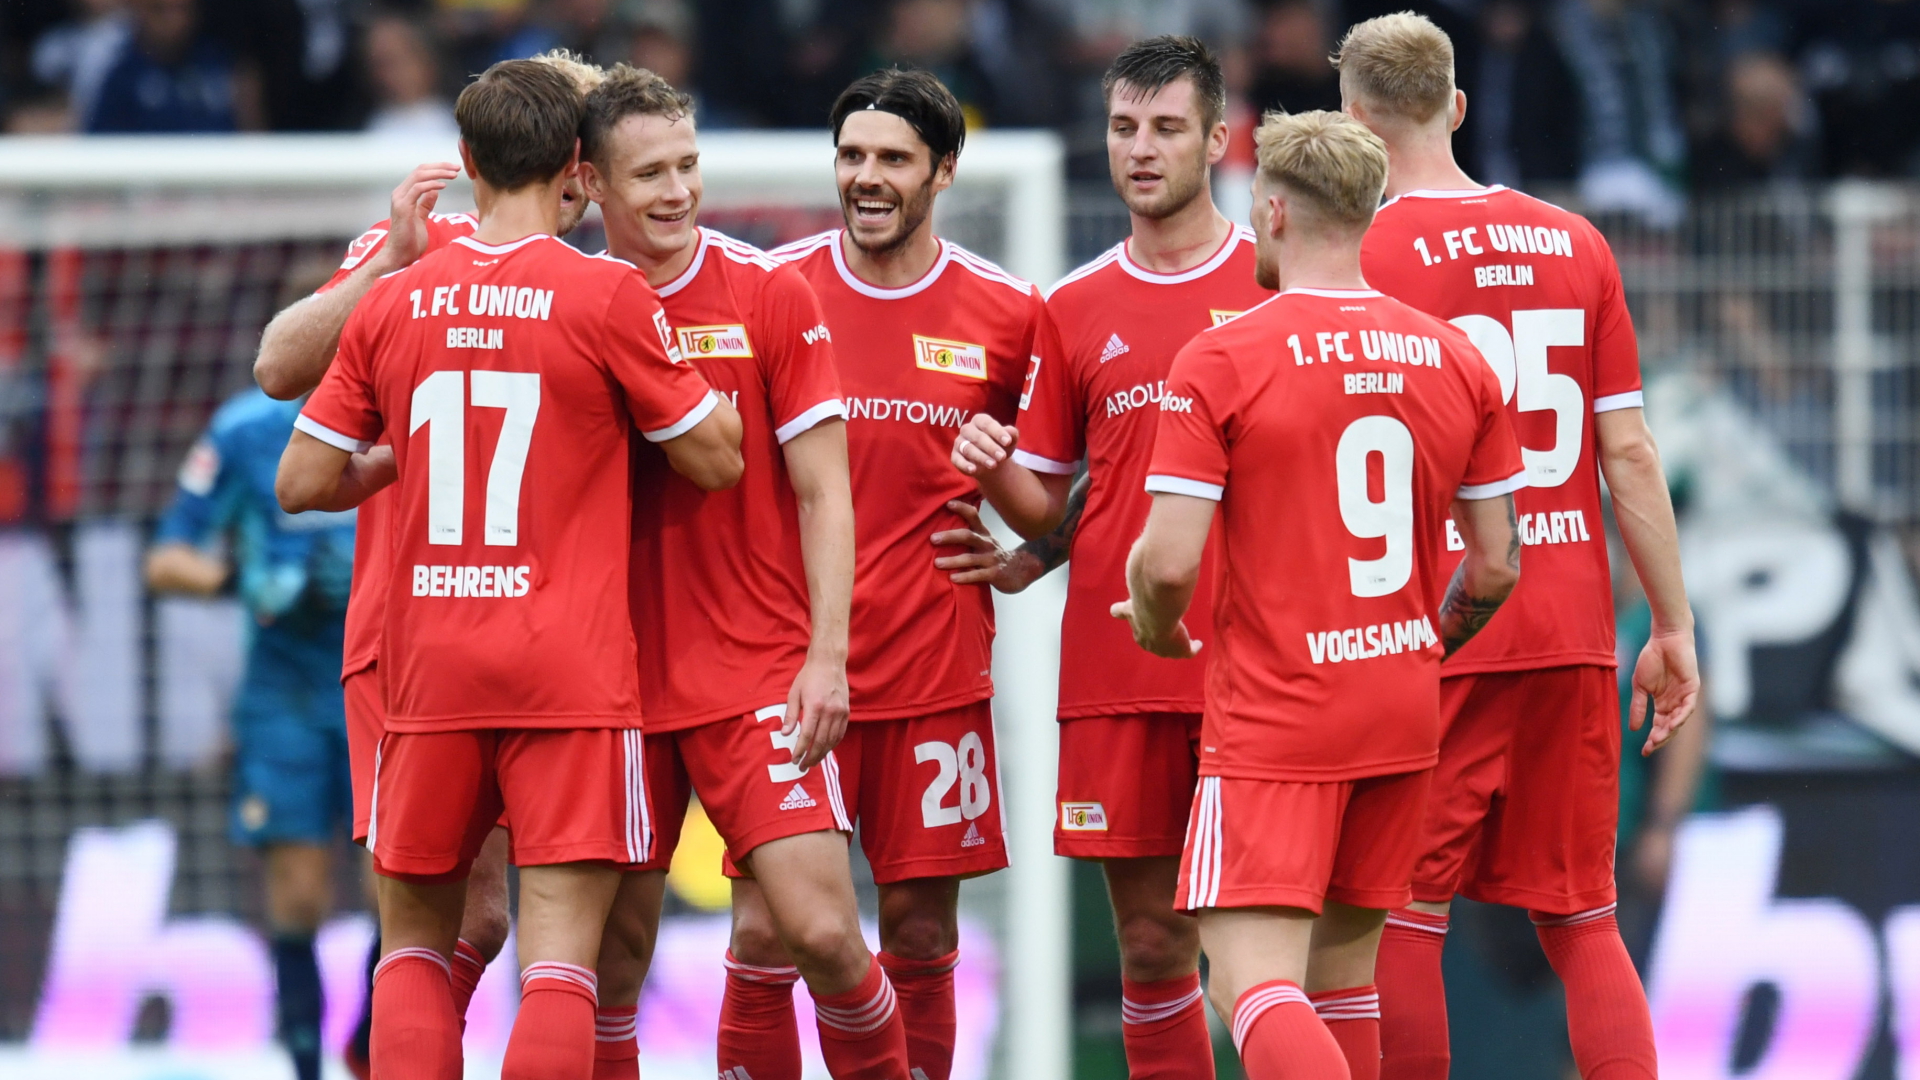 Spieler des Union Berlin feiern ihren ersten Saisonsieg in der Fußball-Bundesliga. | REUTERS